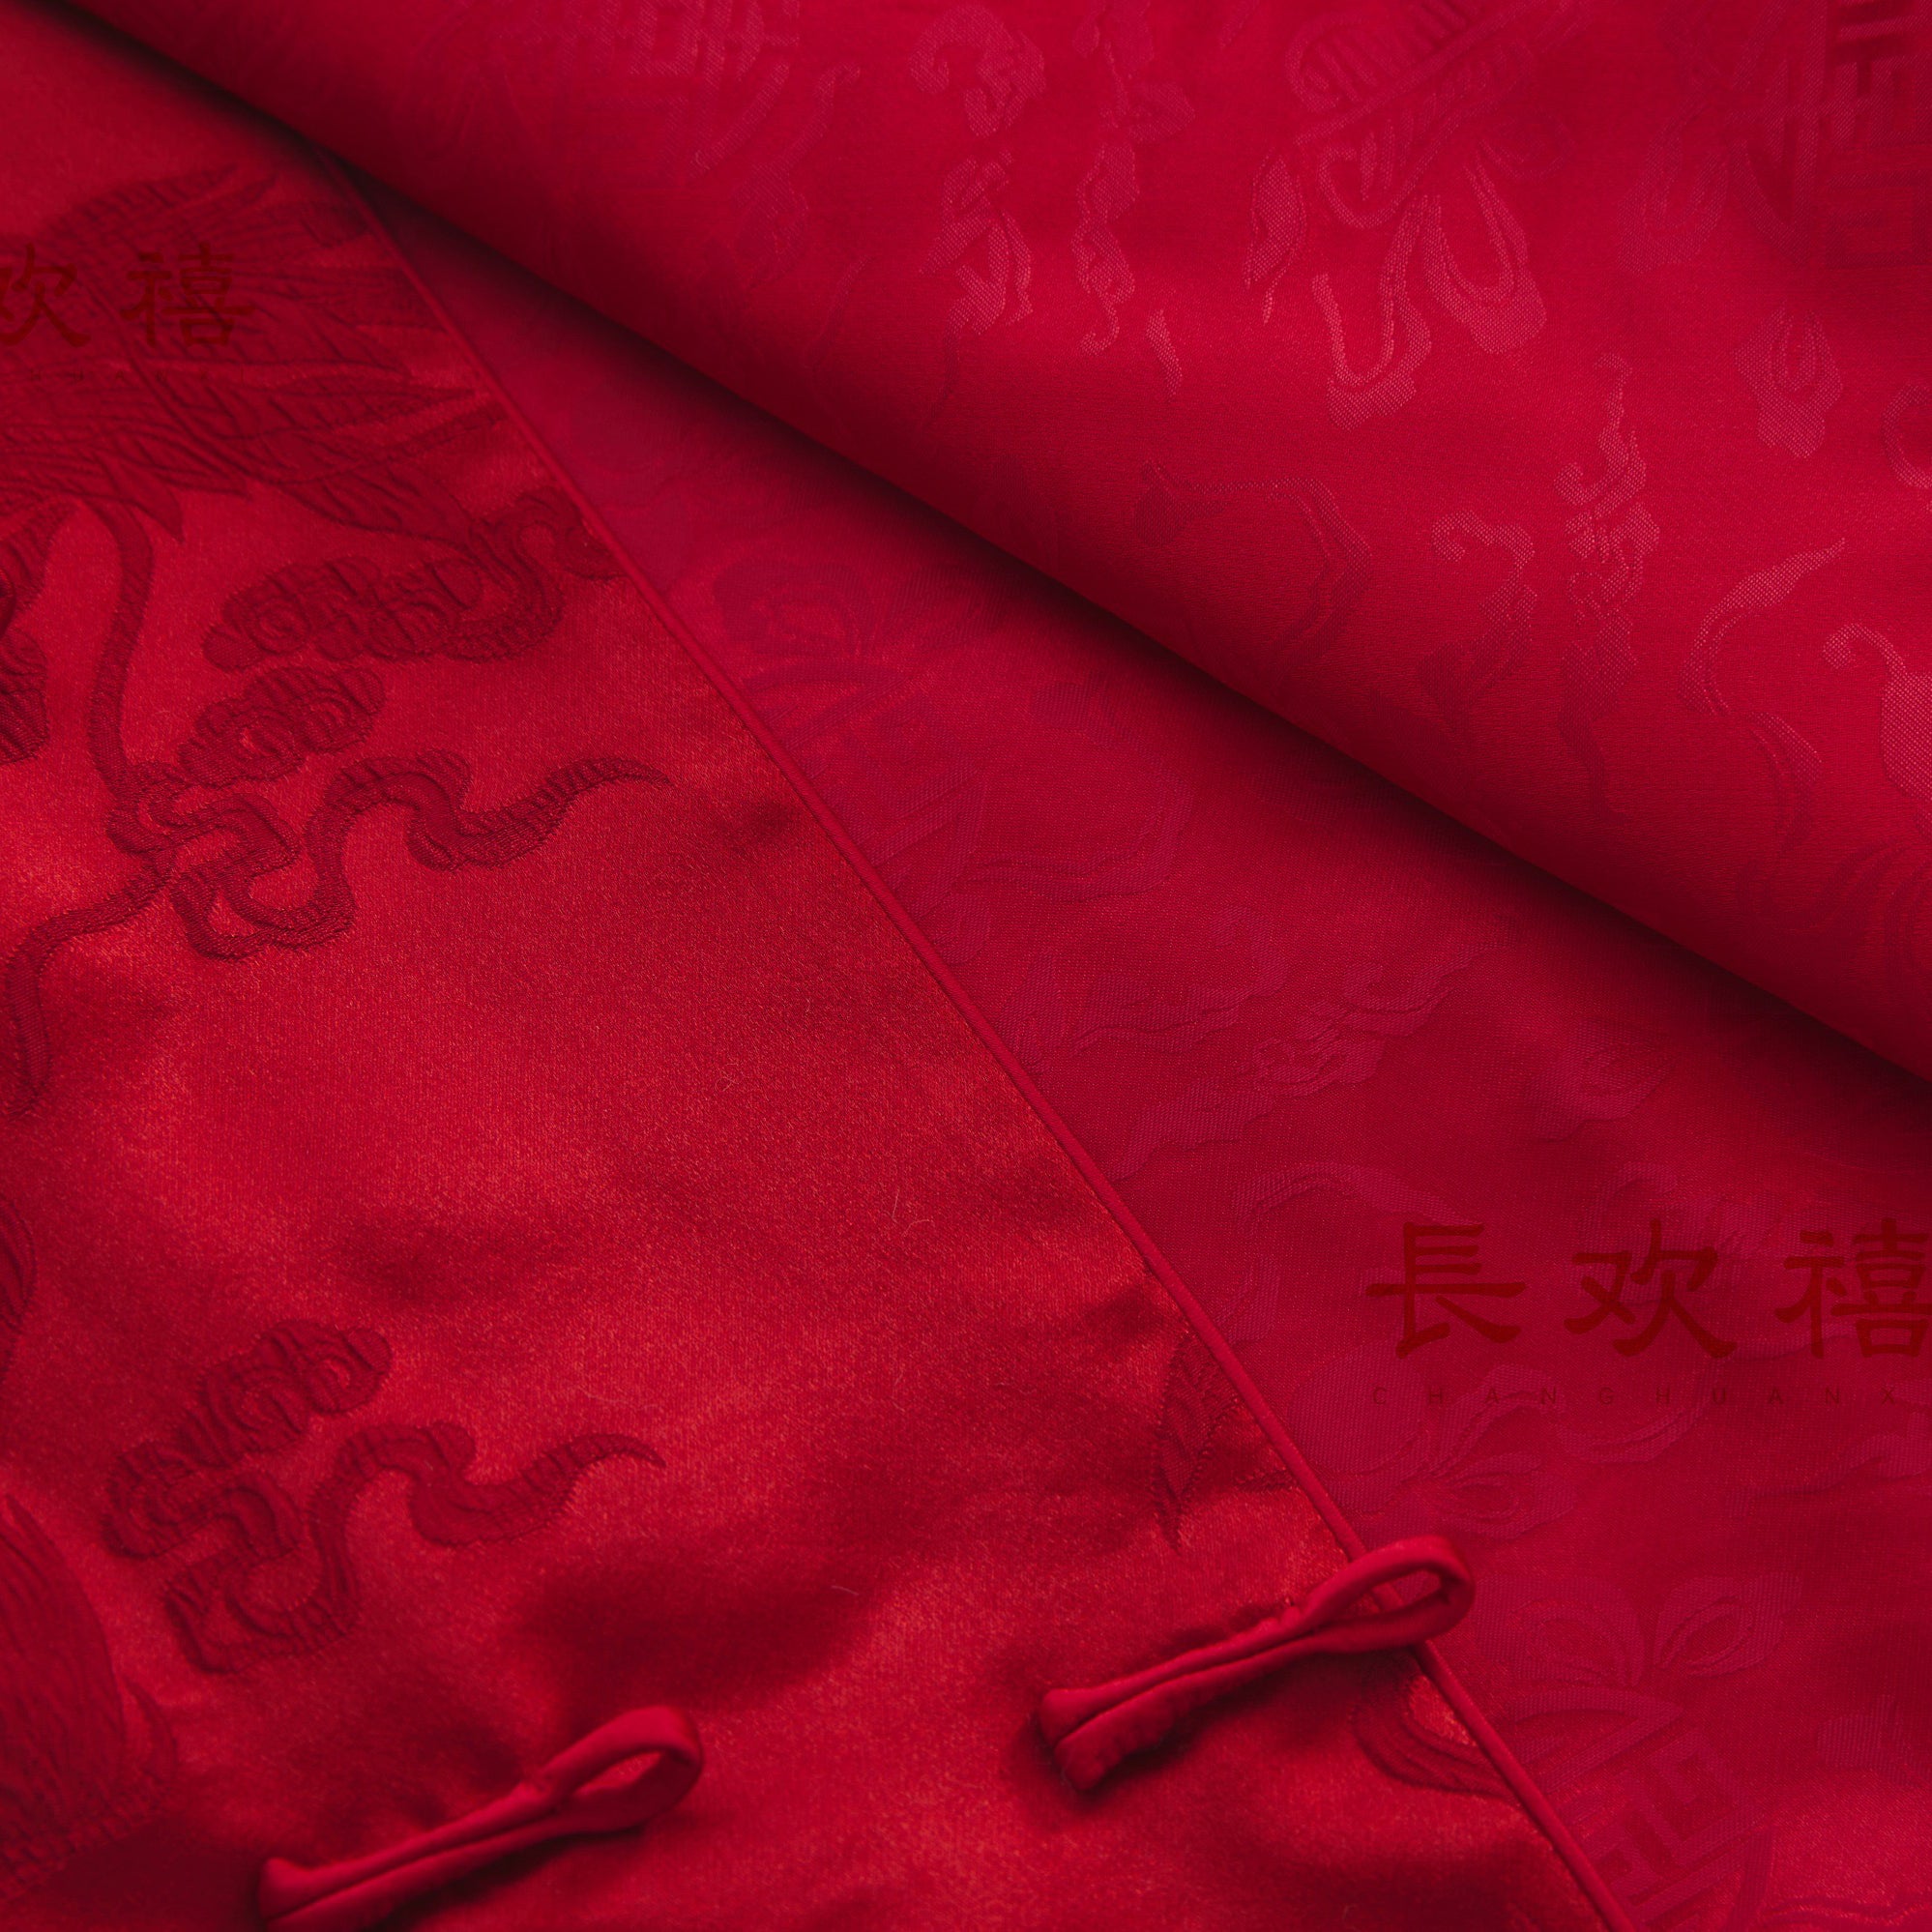 儿童深红色"自在"中式提花棉马甲